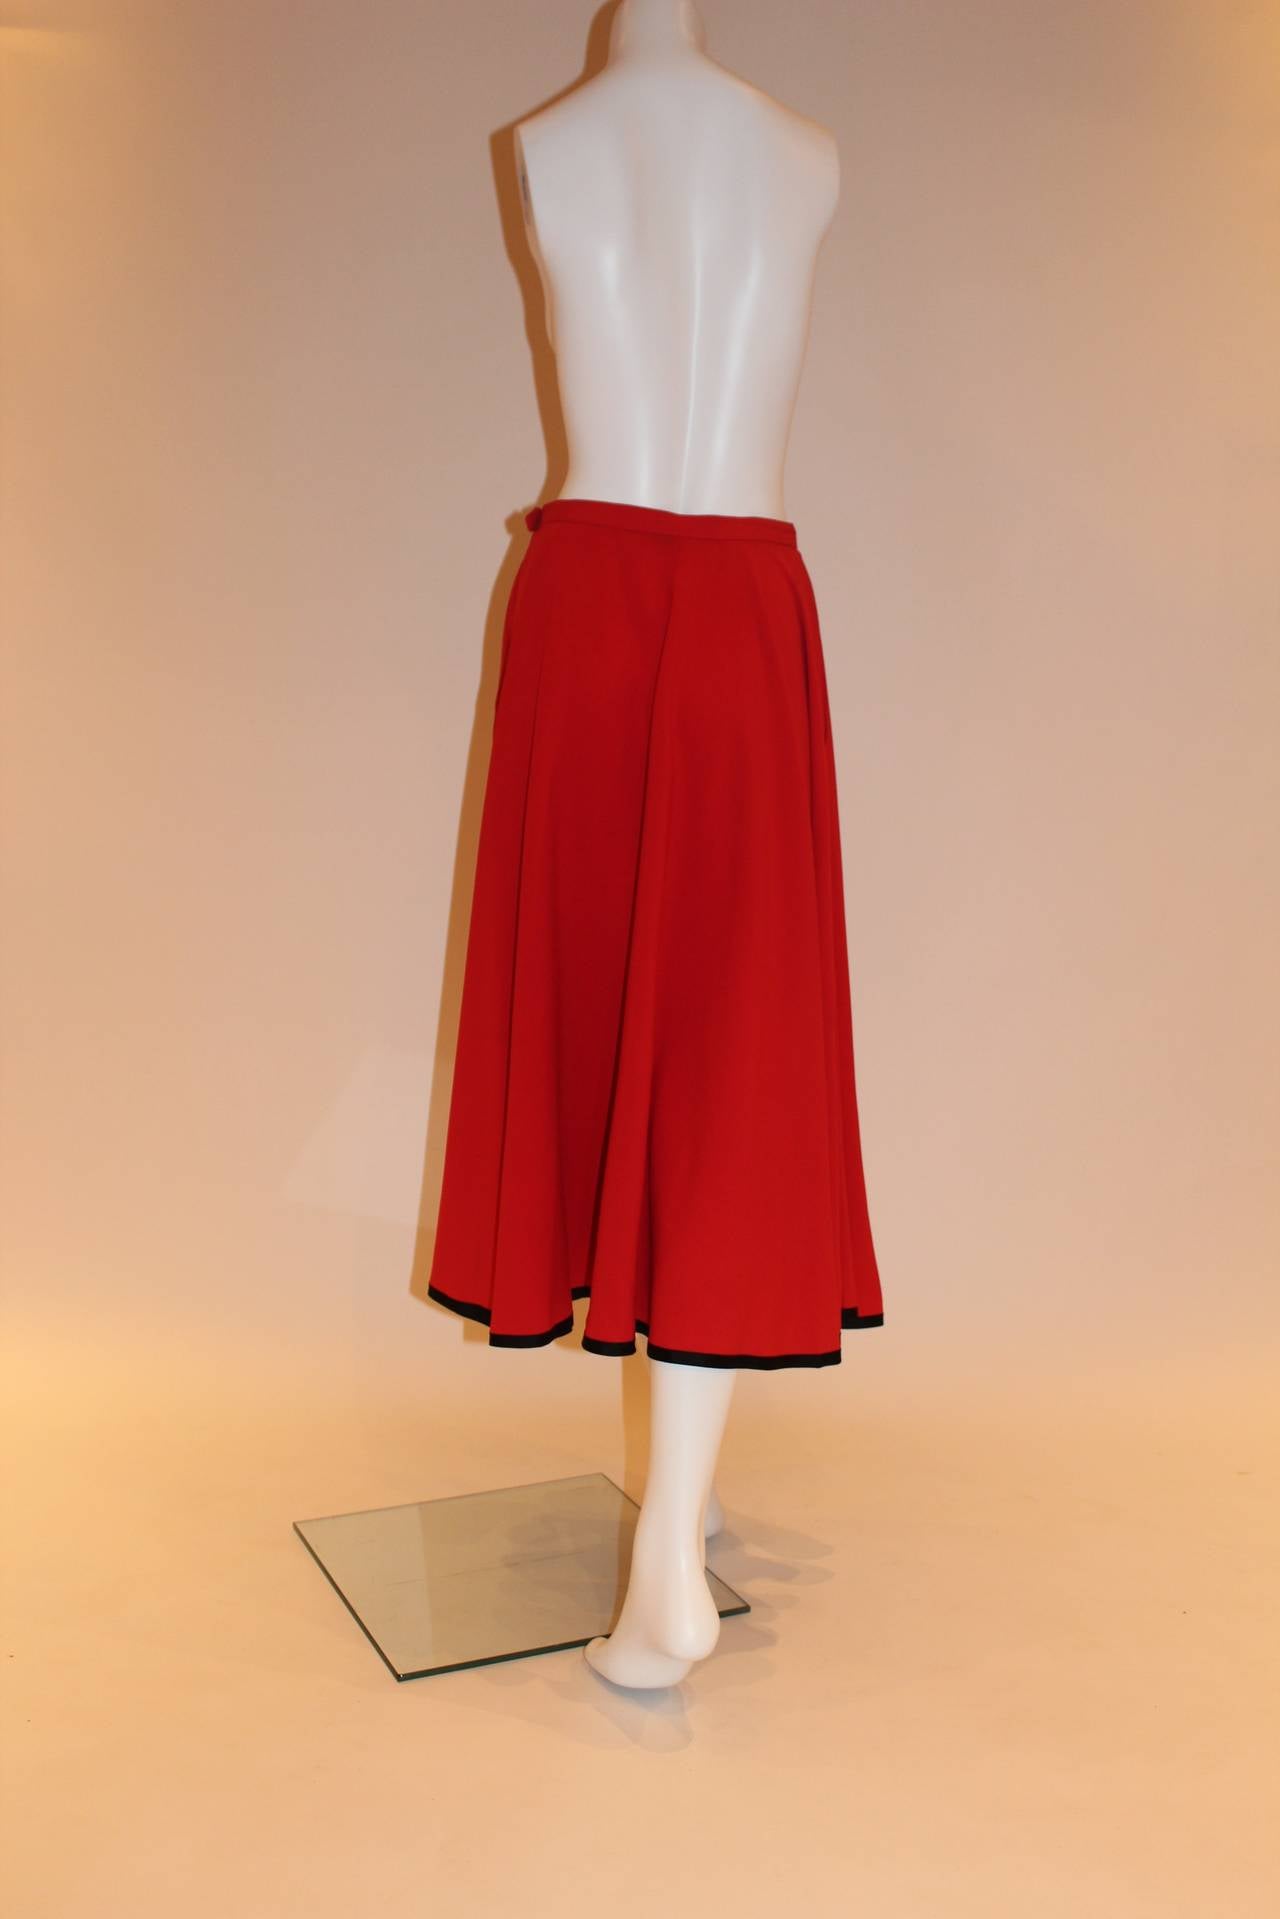 Yves Saint Laurent Rive Gauche Vintage Red Skirt 3